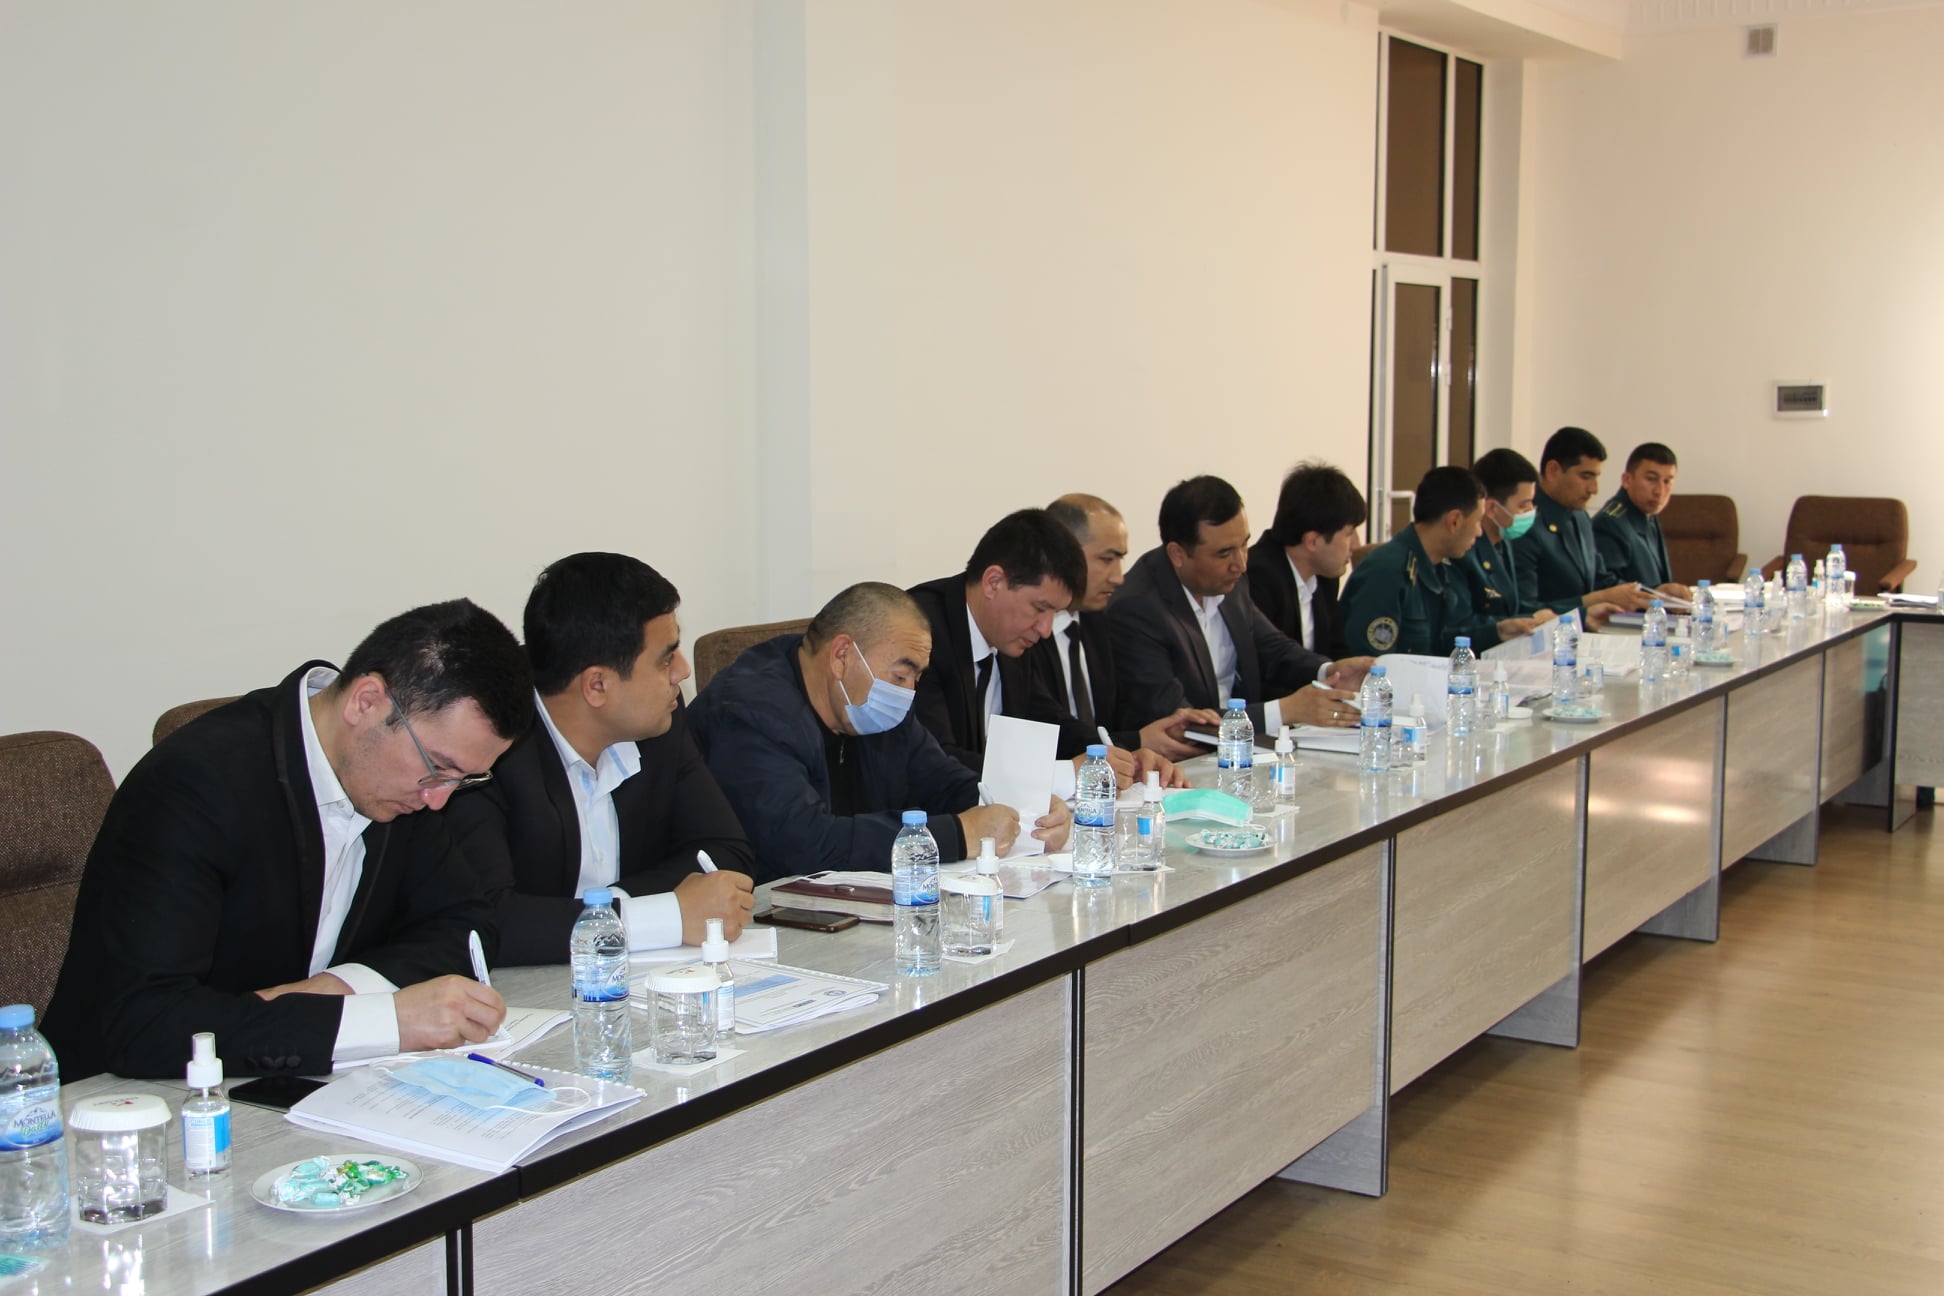 Navbatdagi seminar Qashqadaryo viloyatida tashkil etildi